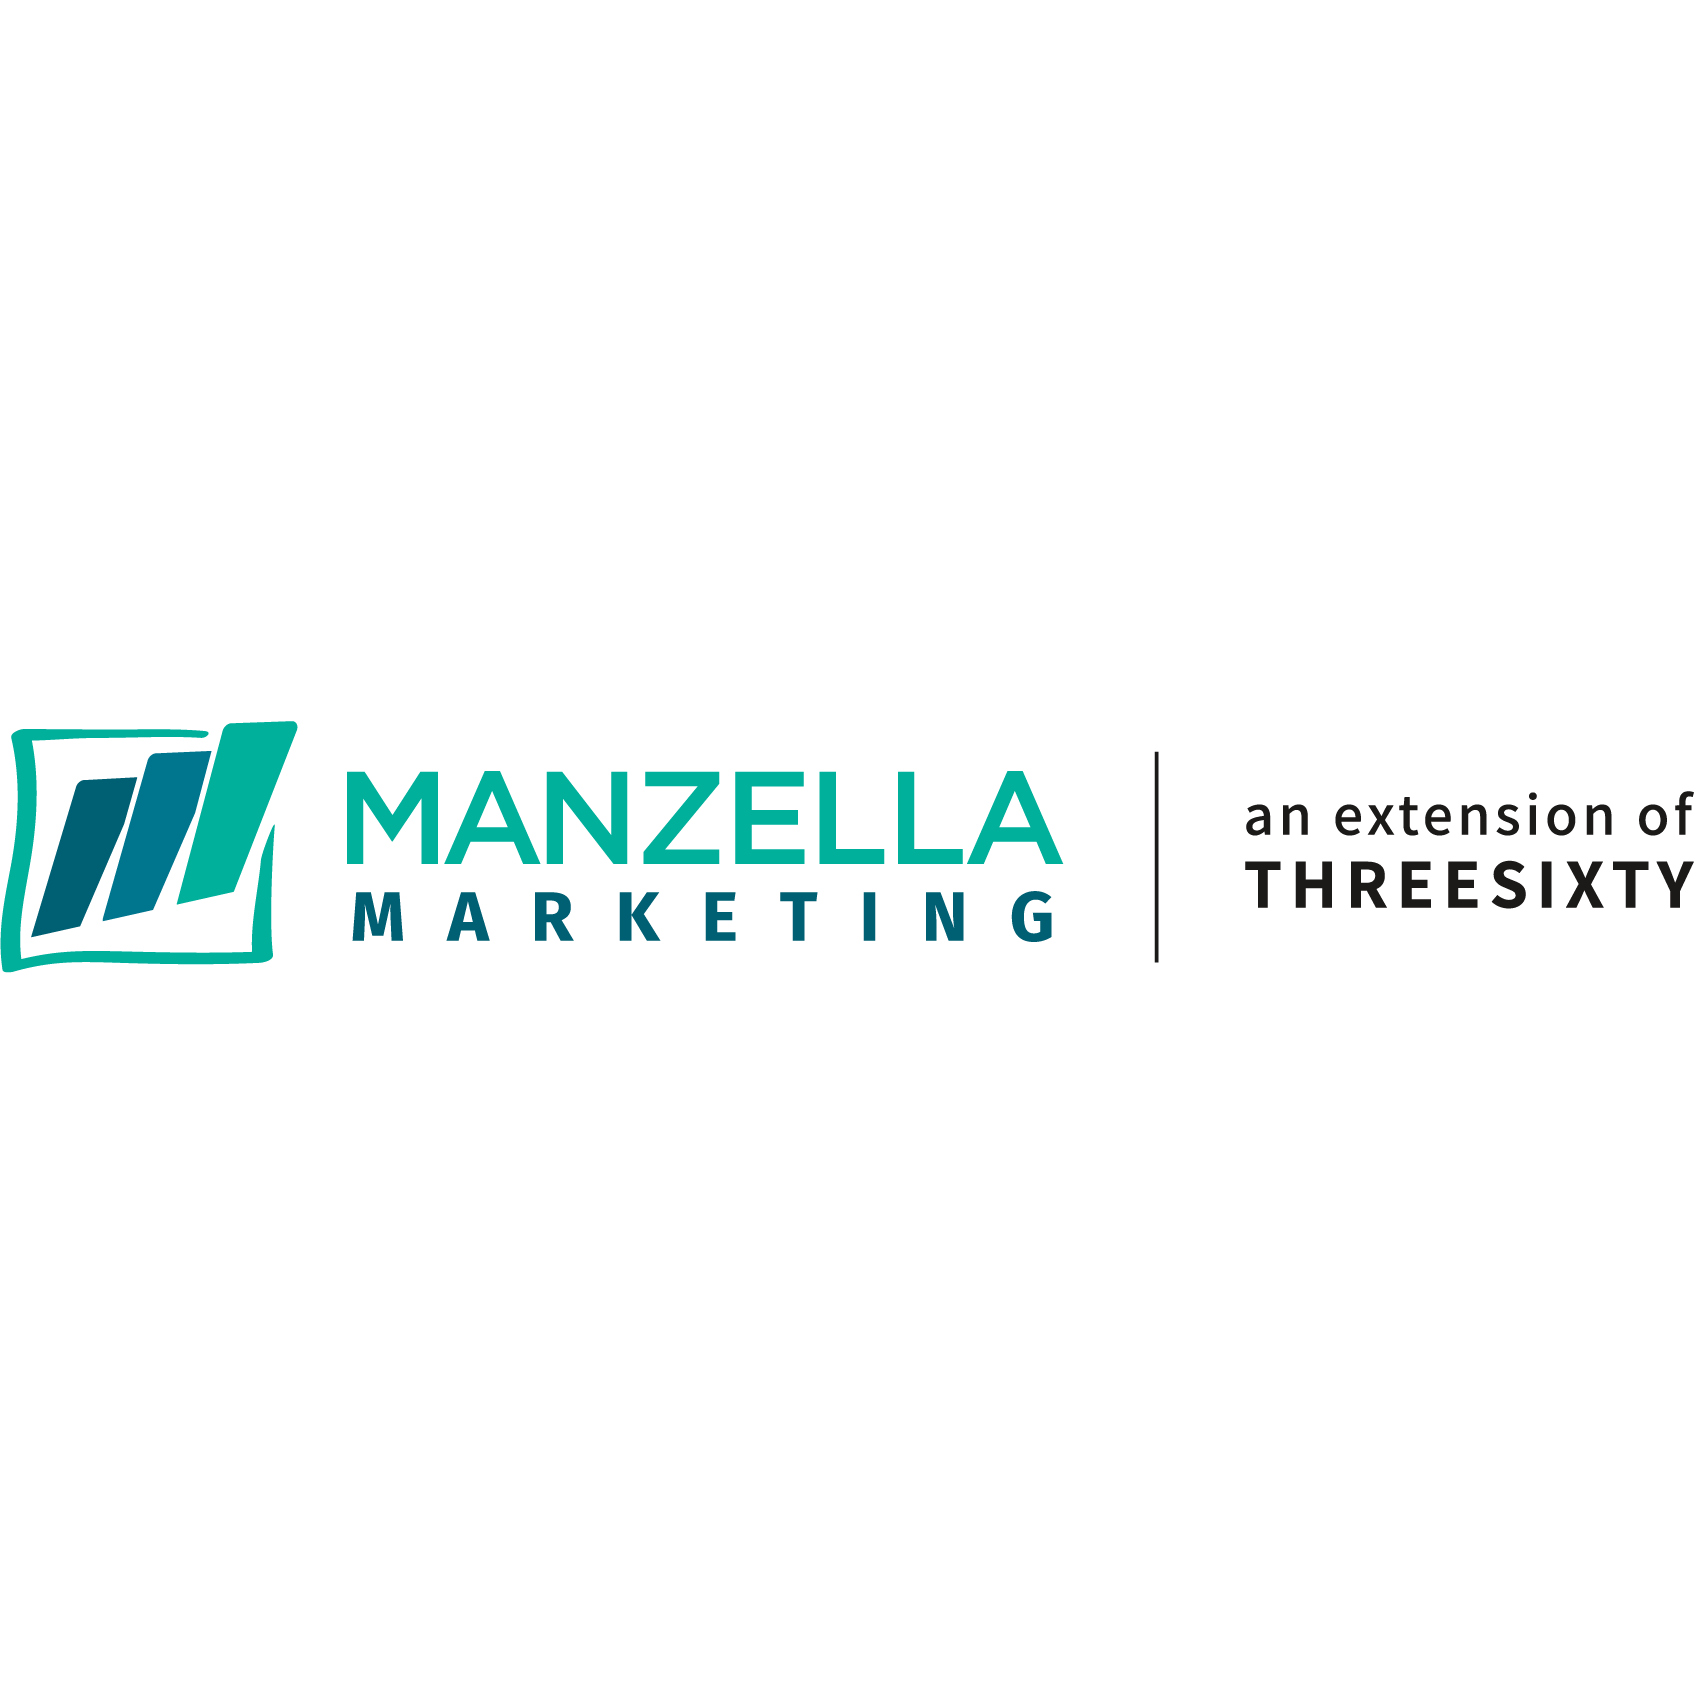 Manzella Marketing Group - Tonawanda, NY 14150 - (716)681-6565 | ShowMeLocal.com